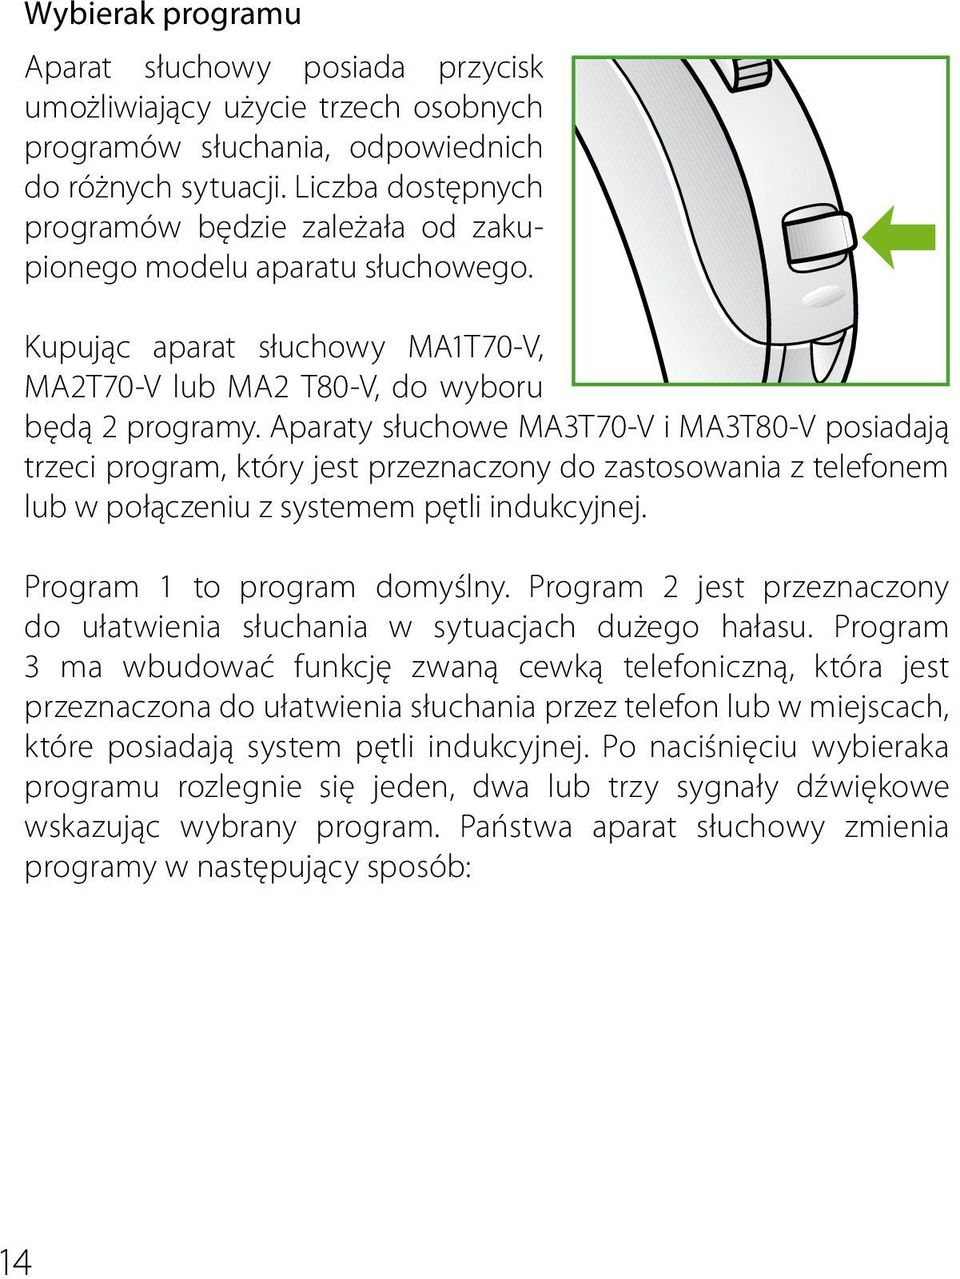 Aparaty słuchowe MA3T70-V i MA3T80-V posiadają trzeci program, który jest przeznaczony do zastosowania z telefonem lub w połączeniu z systemem pętli indukcyjnej. Program 1 to program domyślny.